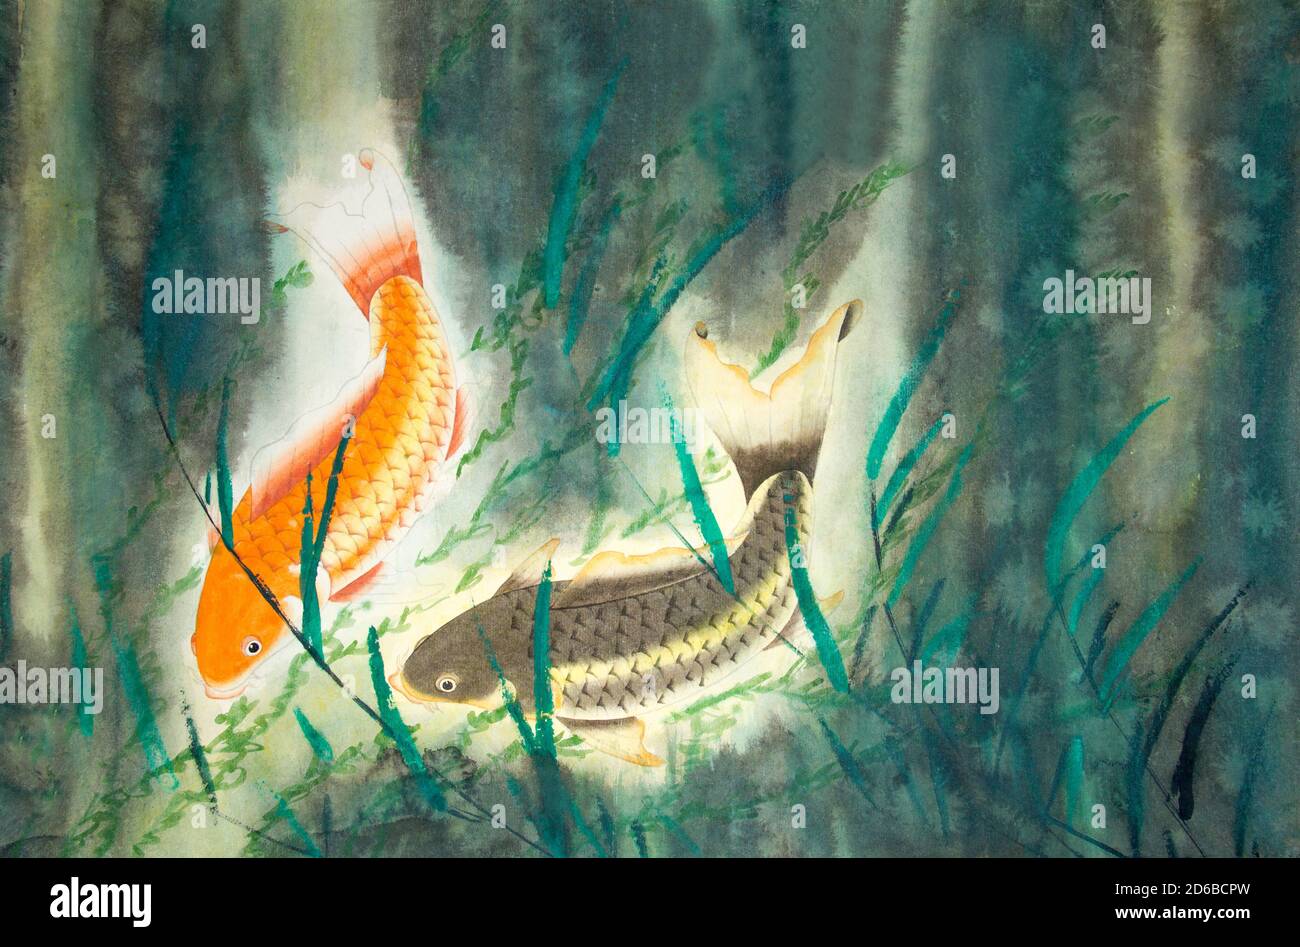 Chinese painting of carp Stock Photo